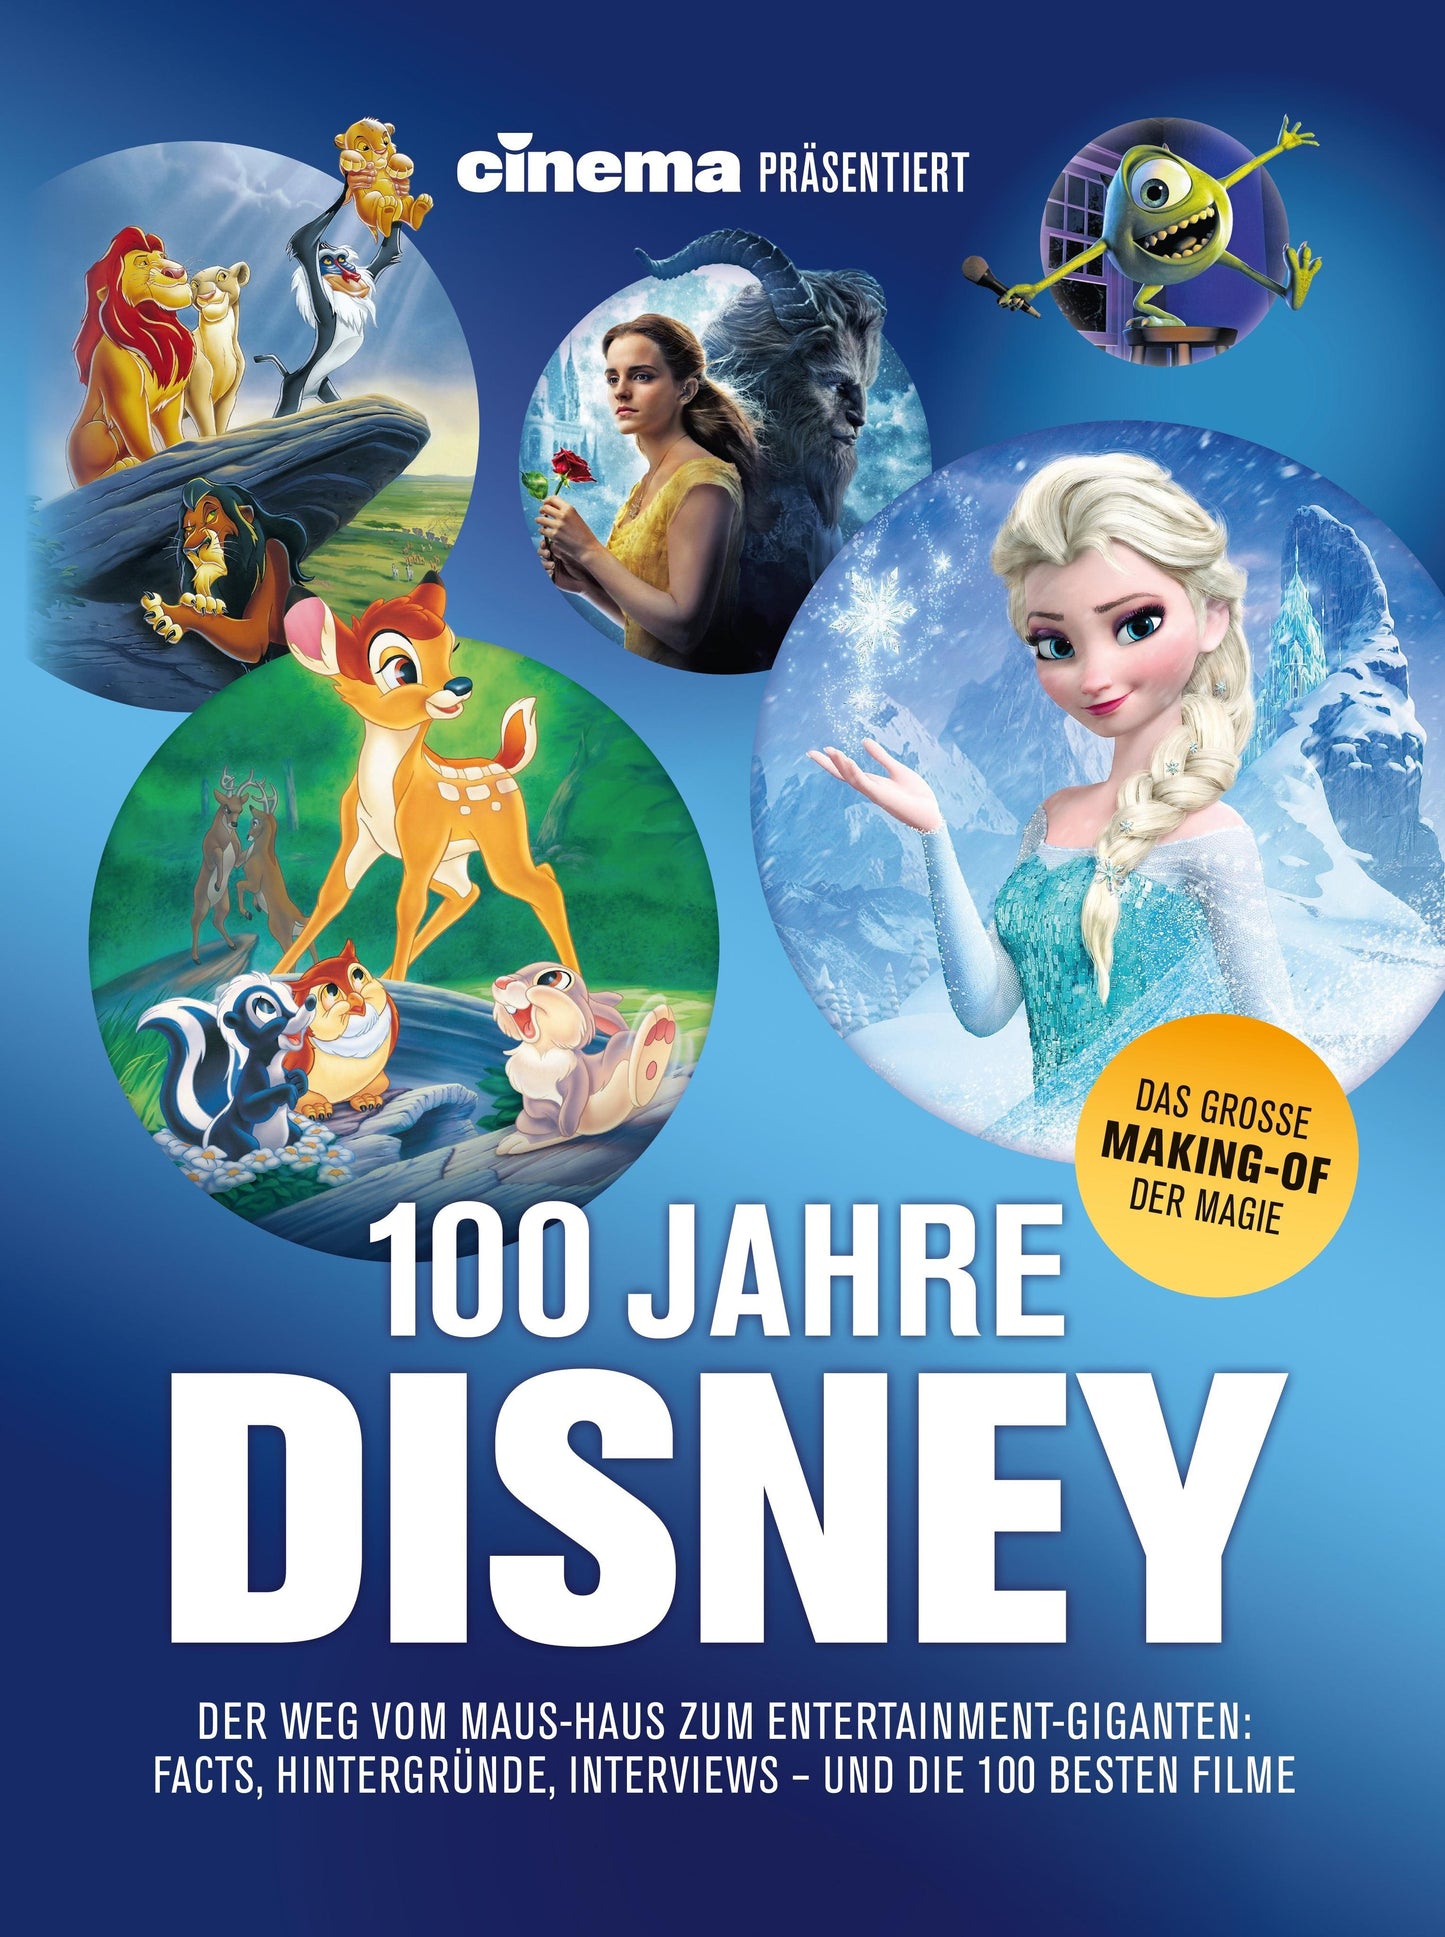 Cinema präsentiert: 100 Jahre Disney: Der Weg vom Maus-Haus zum Entertainment-Giganten: Facts, Hintergründe, Interviews - und die besten hundert Filme